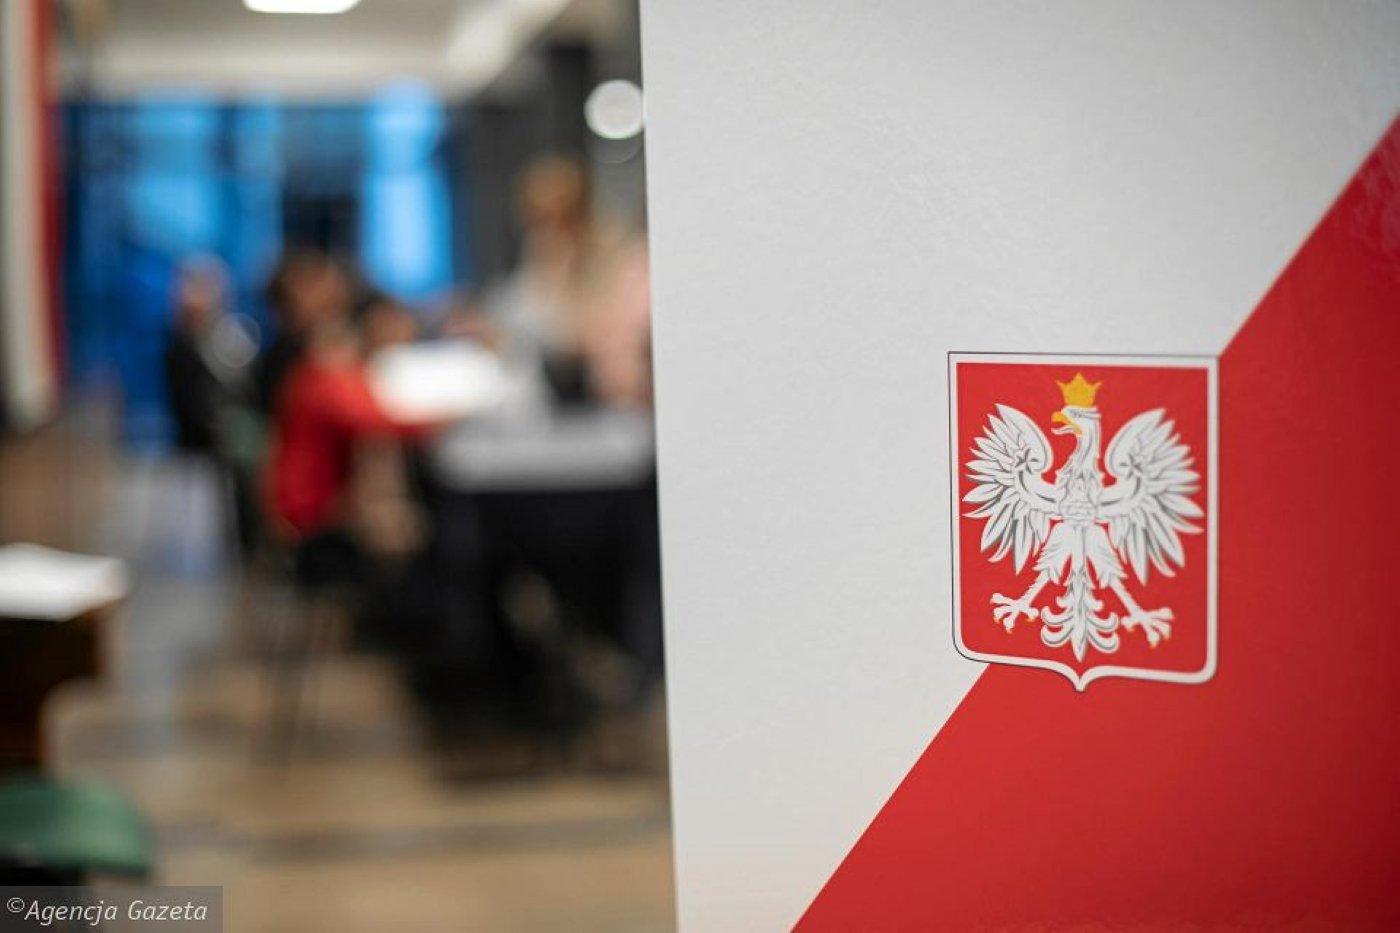 Urna wyborcza w biało-czerwonym kolorze, na pierwszym planie biały orzeł, godło Polski, w tle rozmazany obraz lokalu wyborczego